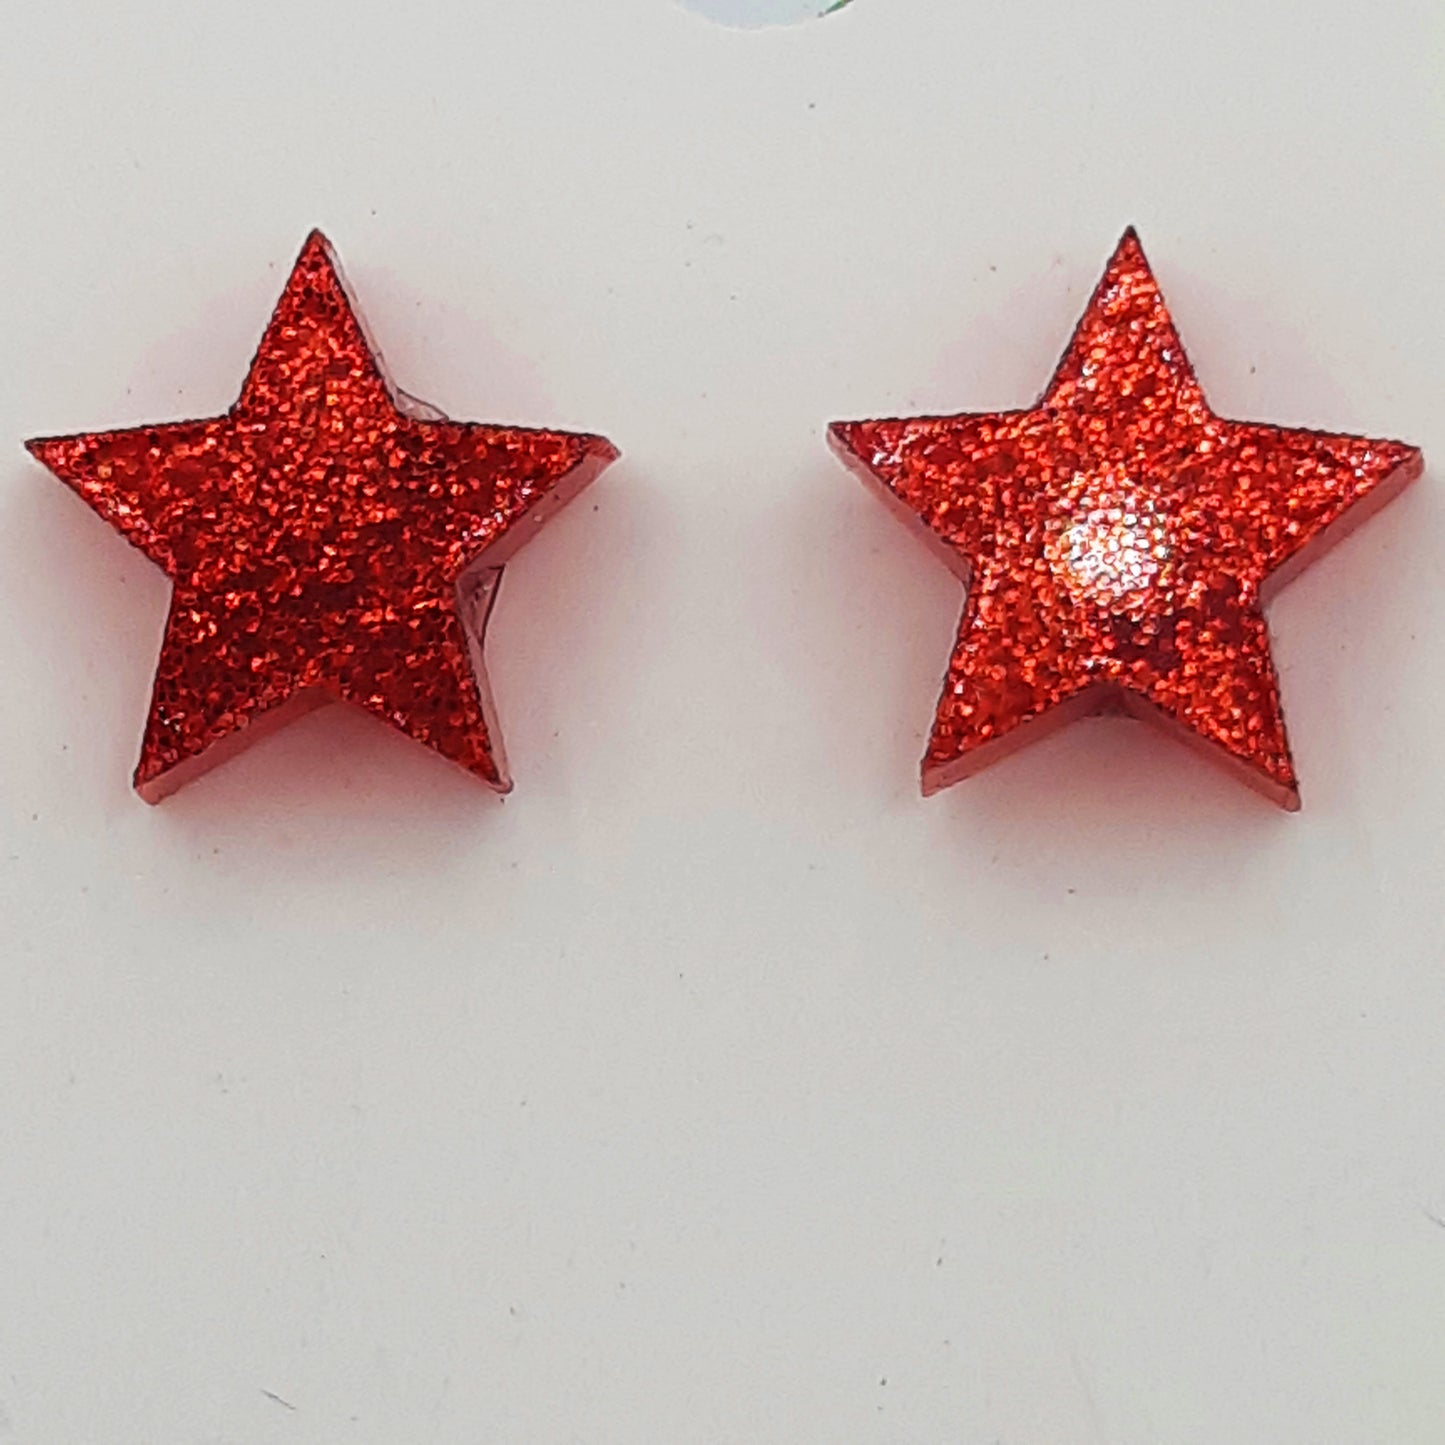 Star laser cut acrylic earrings - red glitter